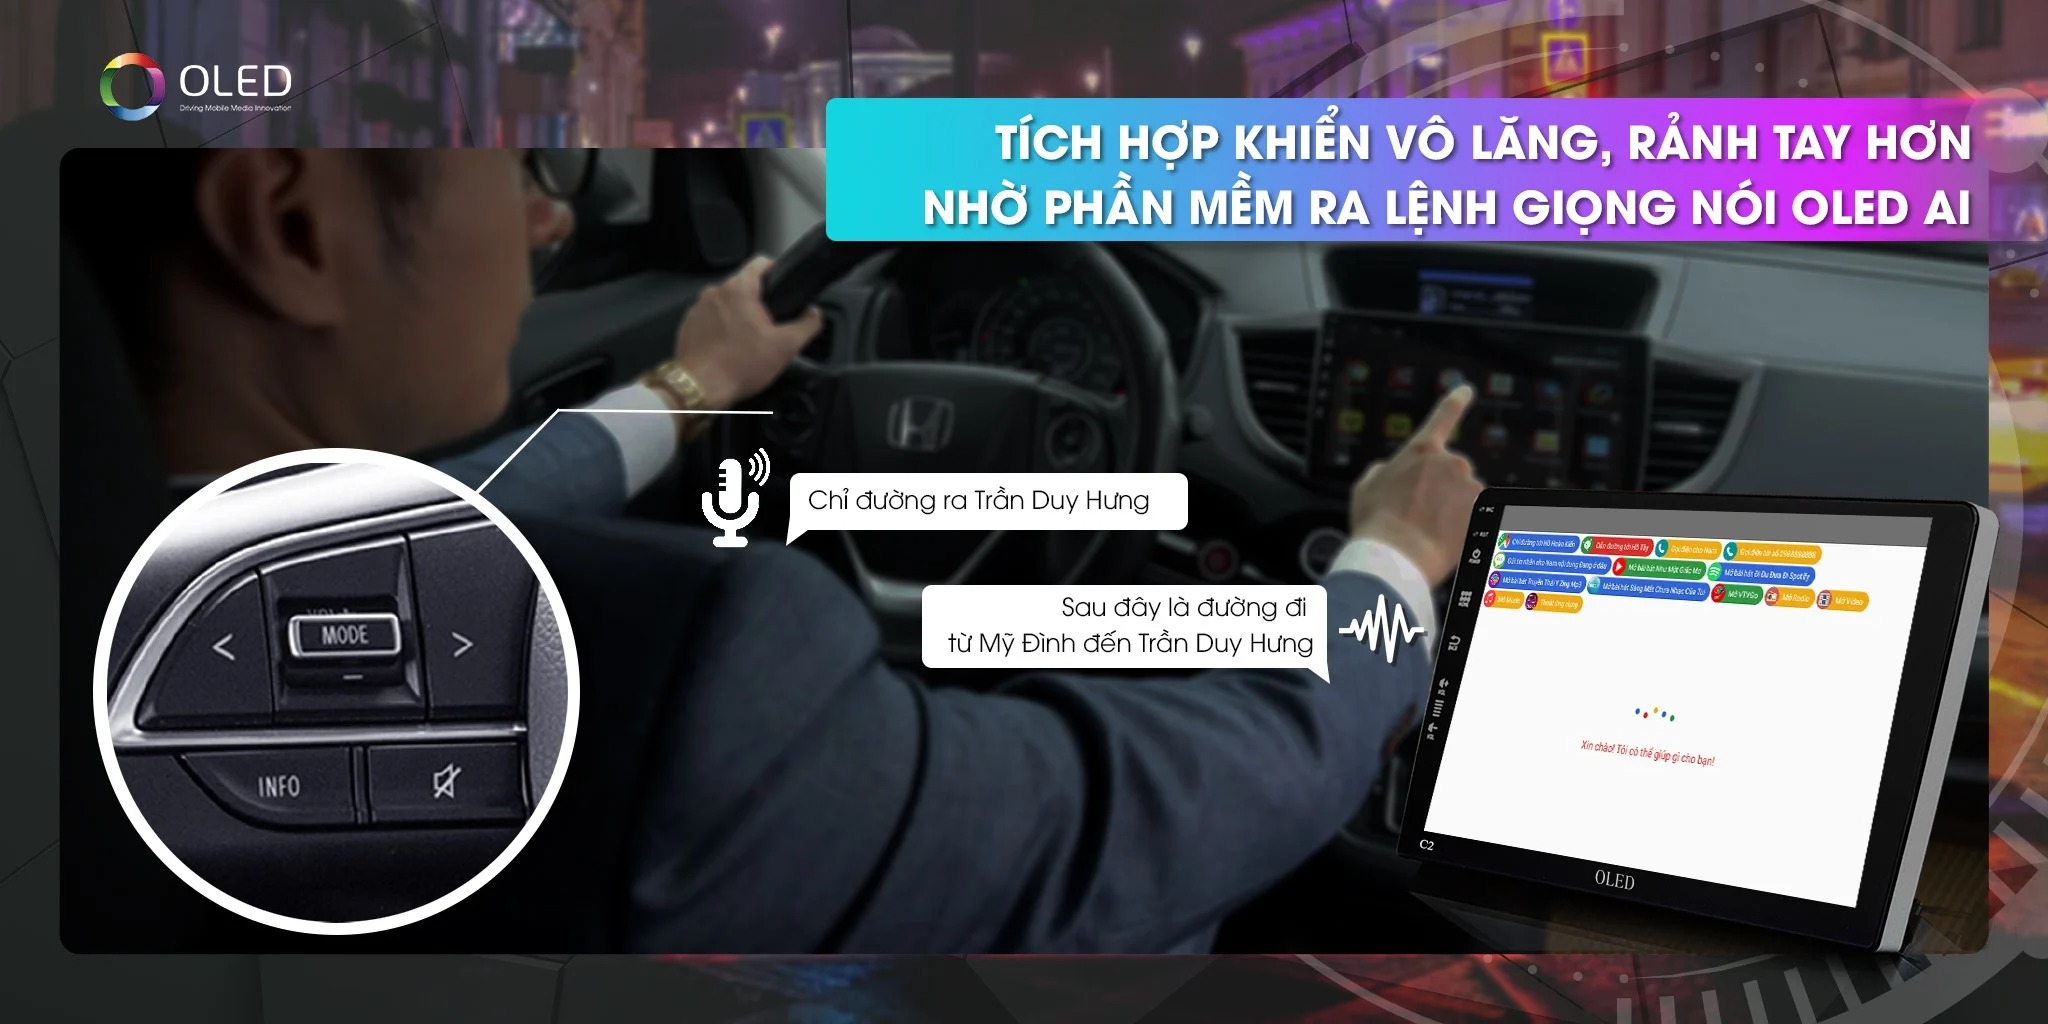 Màn hình DVD Android Oled C2 New cùng bản đồ chỉ đường bằng giọng nói tiếng Việt mang đến cho bạn một trải nghiệm điều khiển thông minh và tiện lợi. Với công nghệ mới, bạn sẽ cảm thấy hài lòng với mọi tính năng trên thiết bị này. Hãy mở hình ảnh liên quan và khám phá sự tuyệt vời của nó.